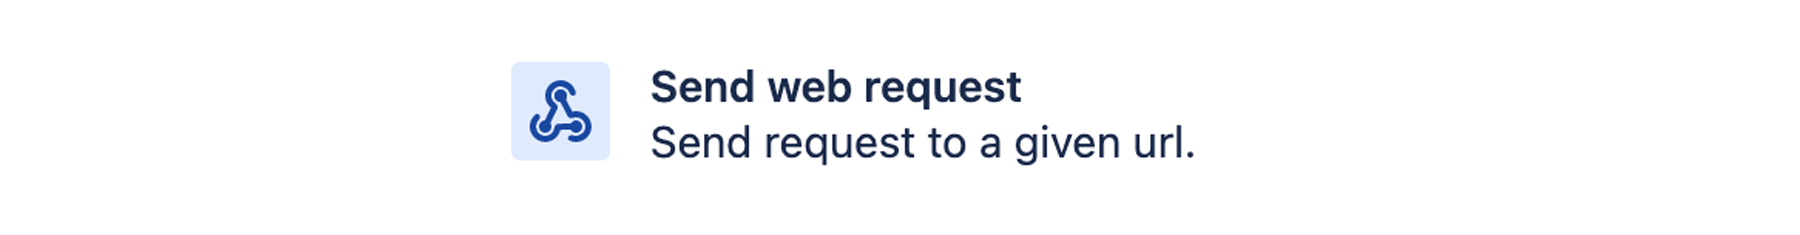 Send web request (Отправить веб-запрос)